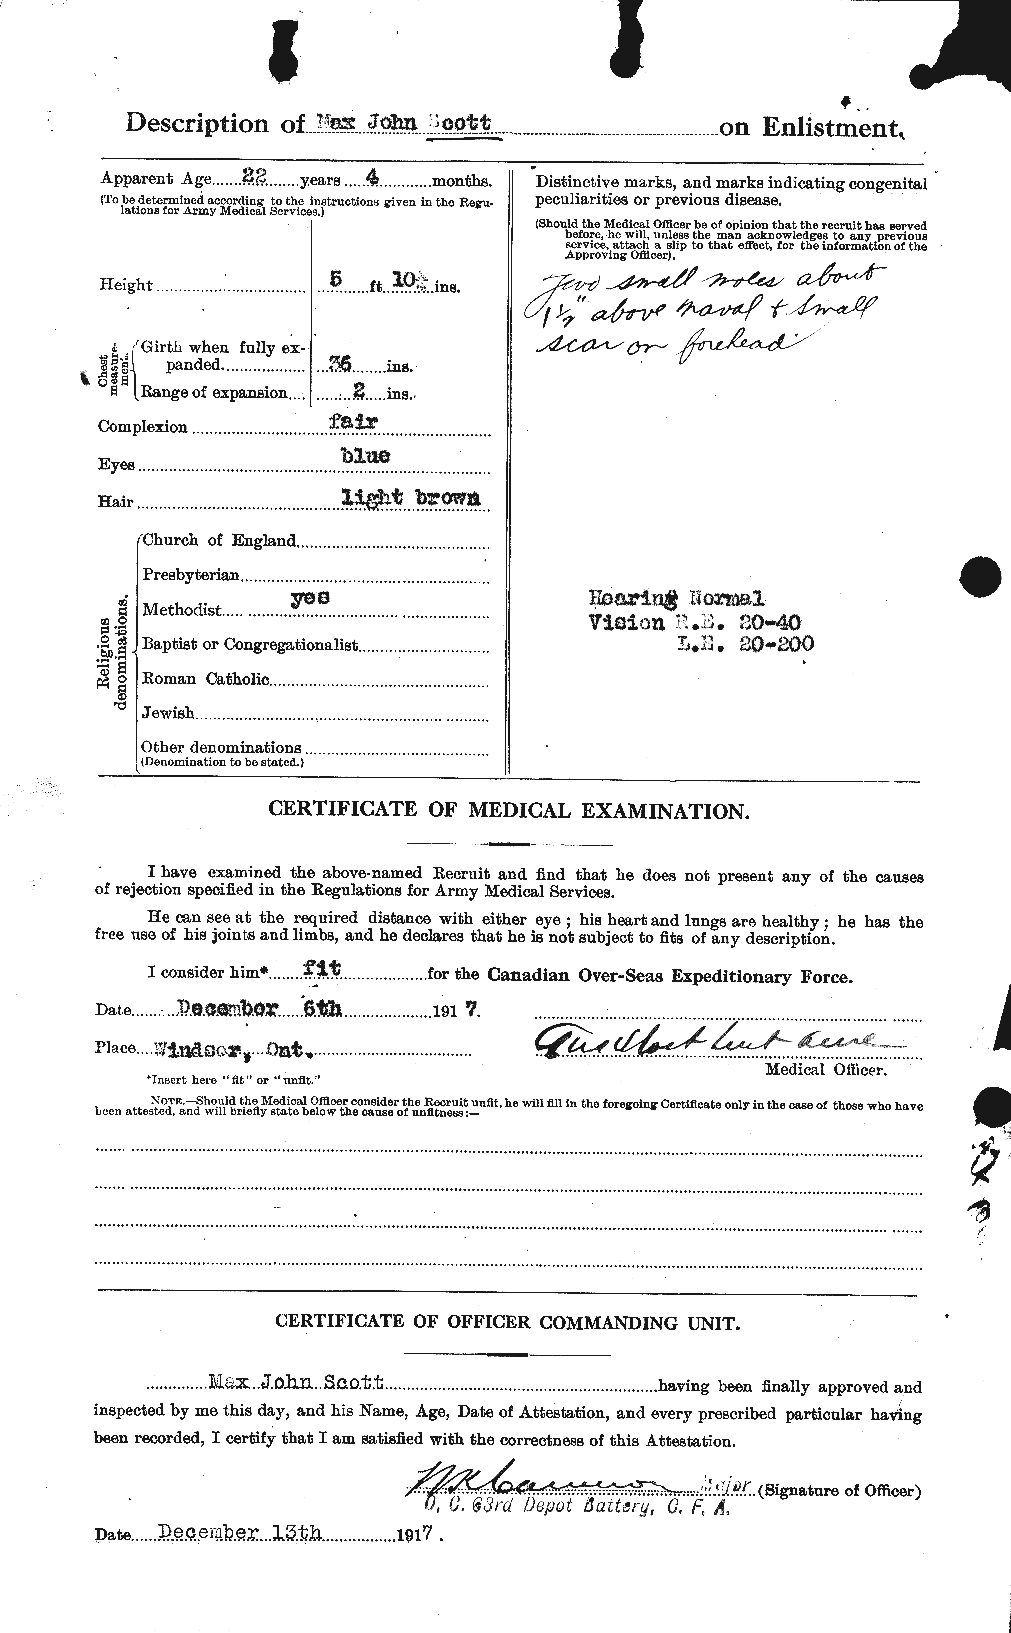 Dossiers du Personnel de la Première Guerre mondiale - CEC 083501b